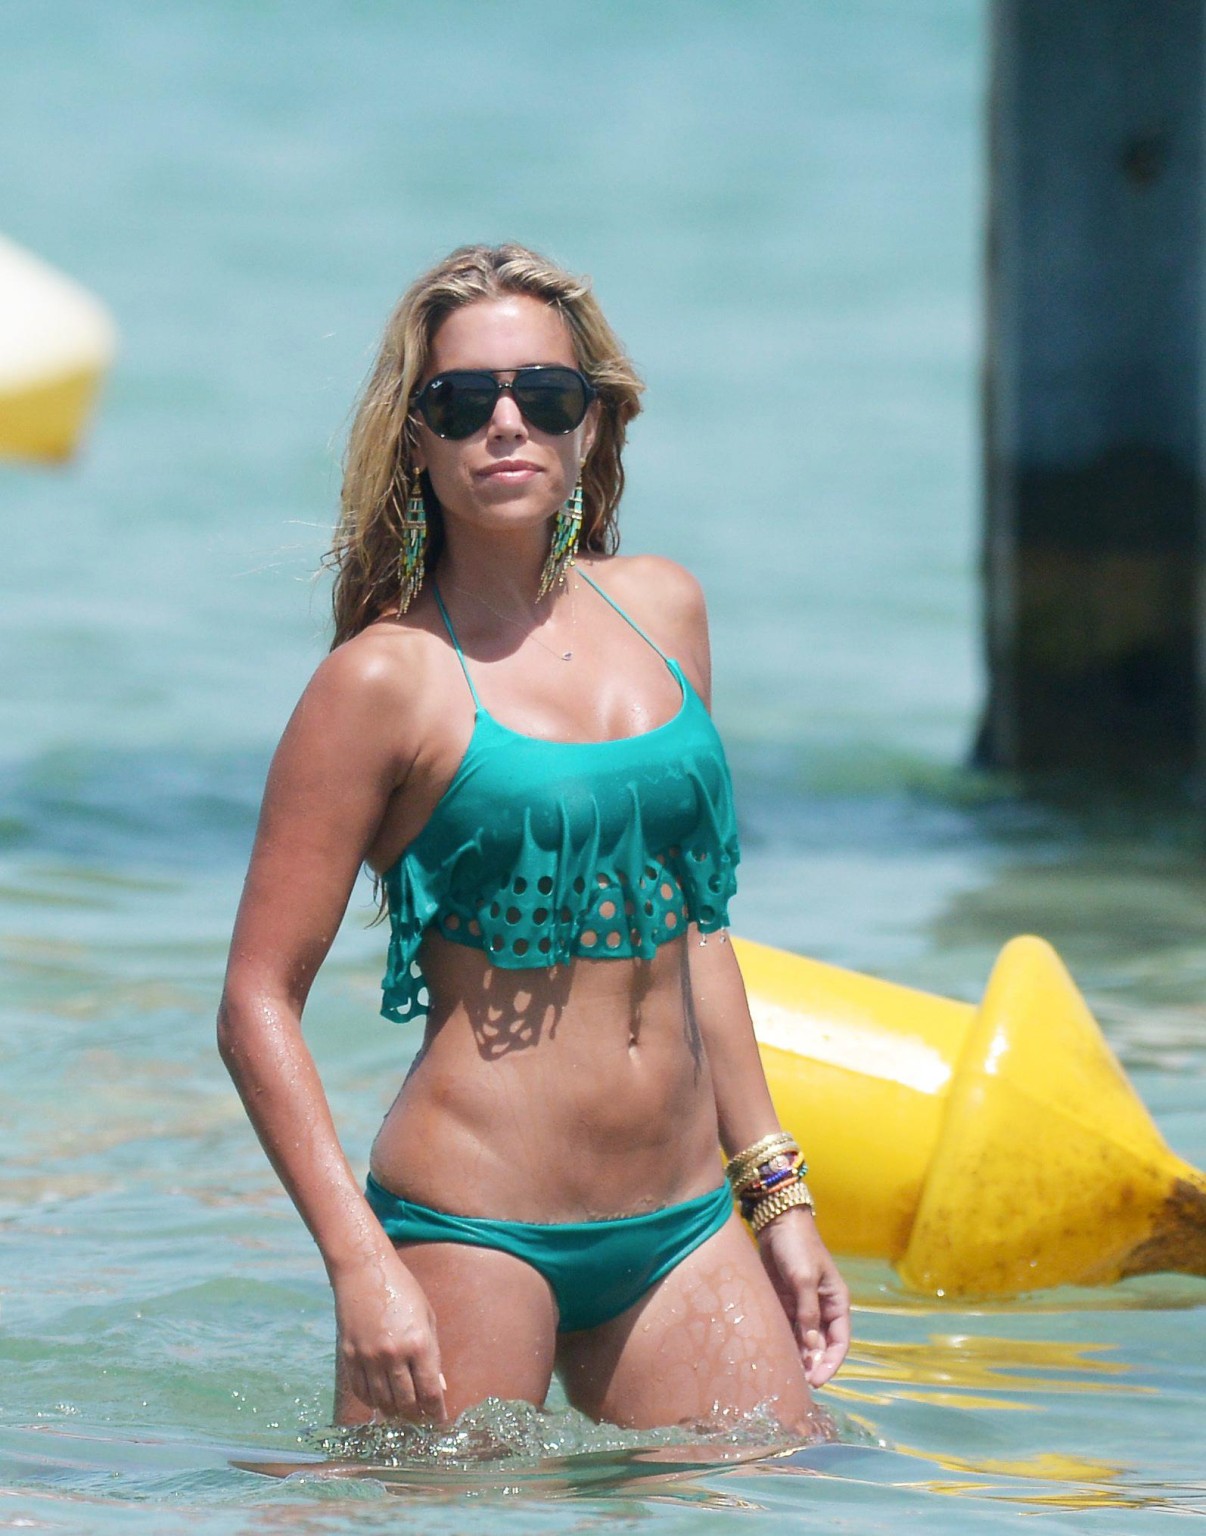 Sylvie van der vaart en bikini sur une plage de st. tropez
 #75222482